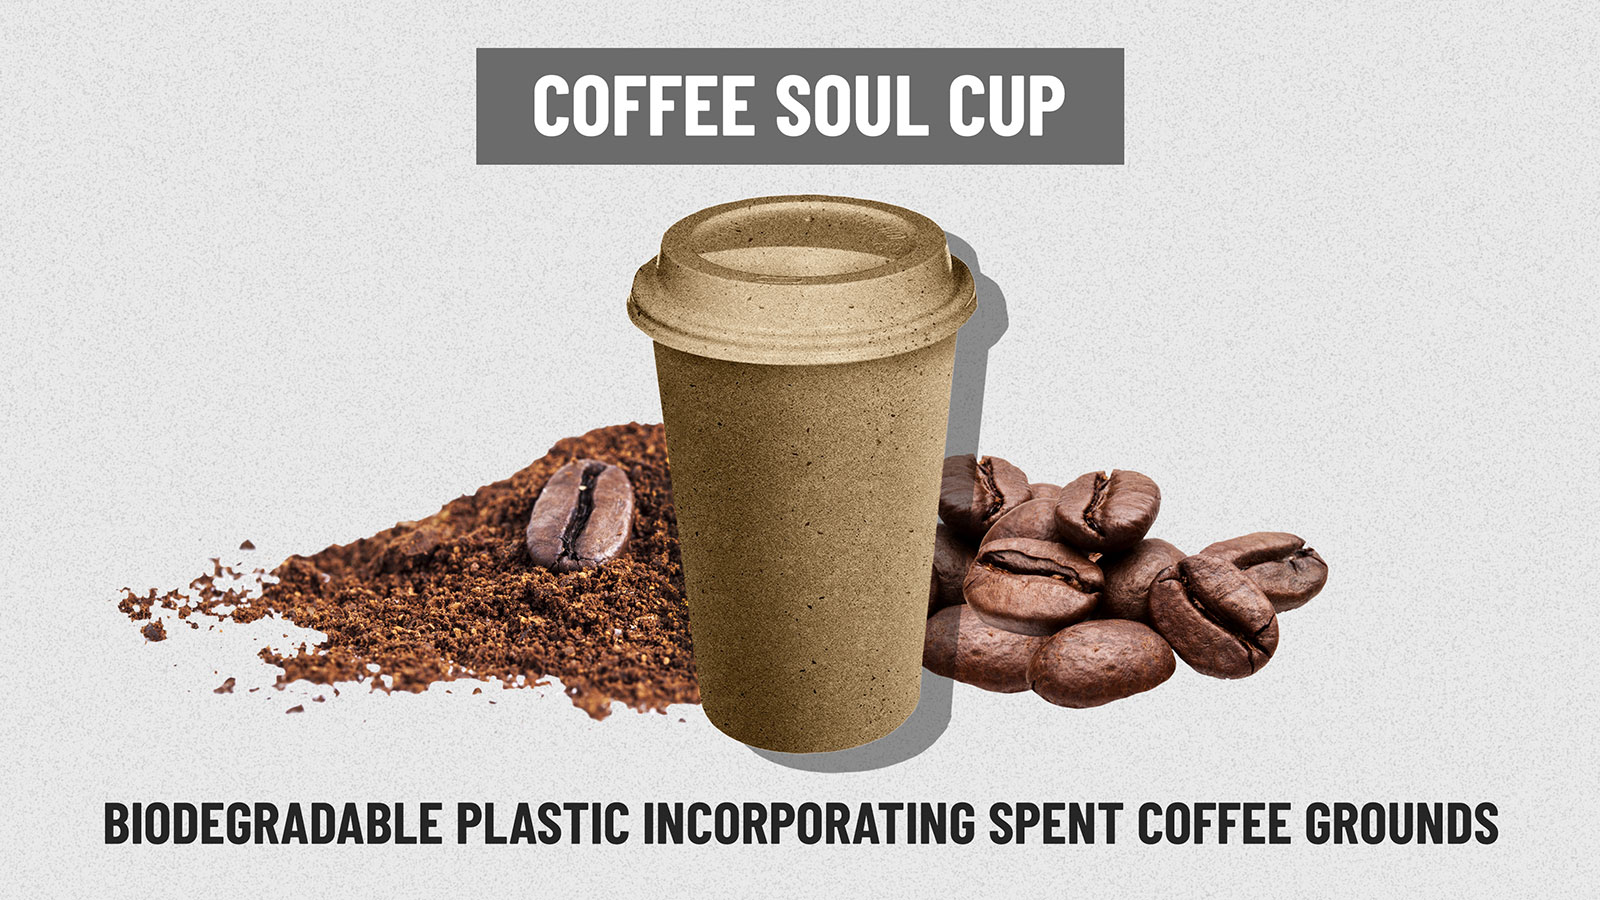 https://cdn.cnn.com/cnn/interactive/2019/02/business/starbucks-cup-problem/media/cups-centerpiece-gallery-coffee.jpg